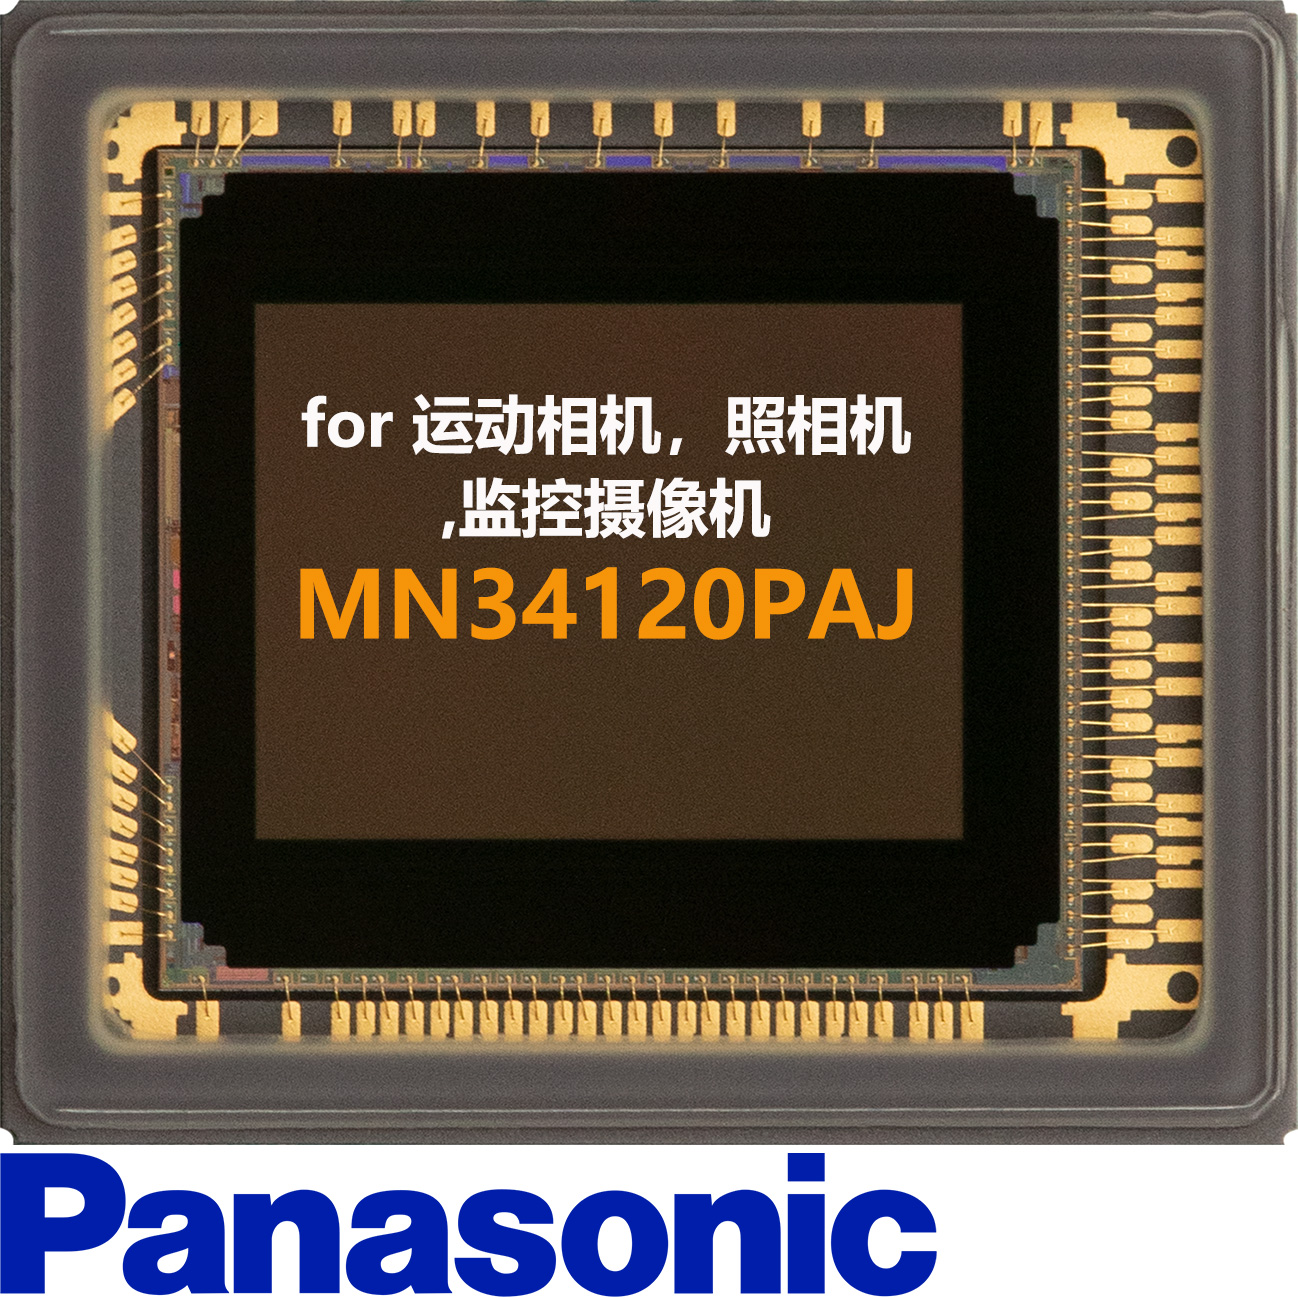 松下Panasonic CMOS， MN34120PAJ深圳现货，1600万像素运动相机CMOS,16MP相机cmos，16mp工业相机sensor，松下安防CMOS，监控摄像机1080p60帧图像传感器，1080p@60fps CMOS，1/2.33-inch 4:3 sensor